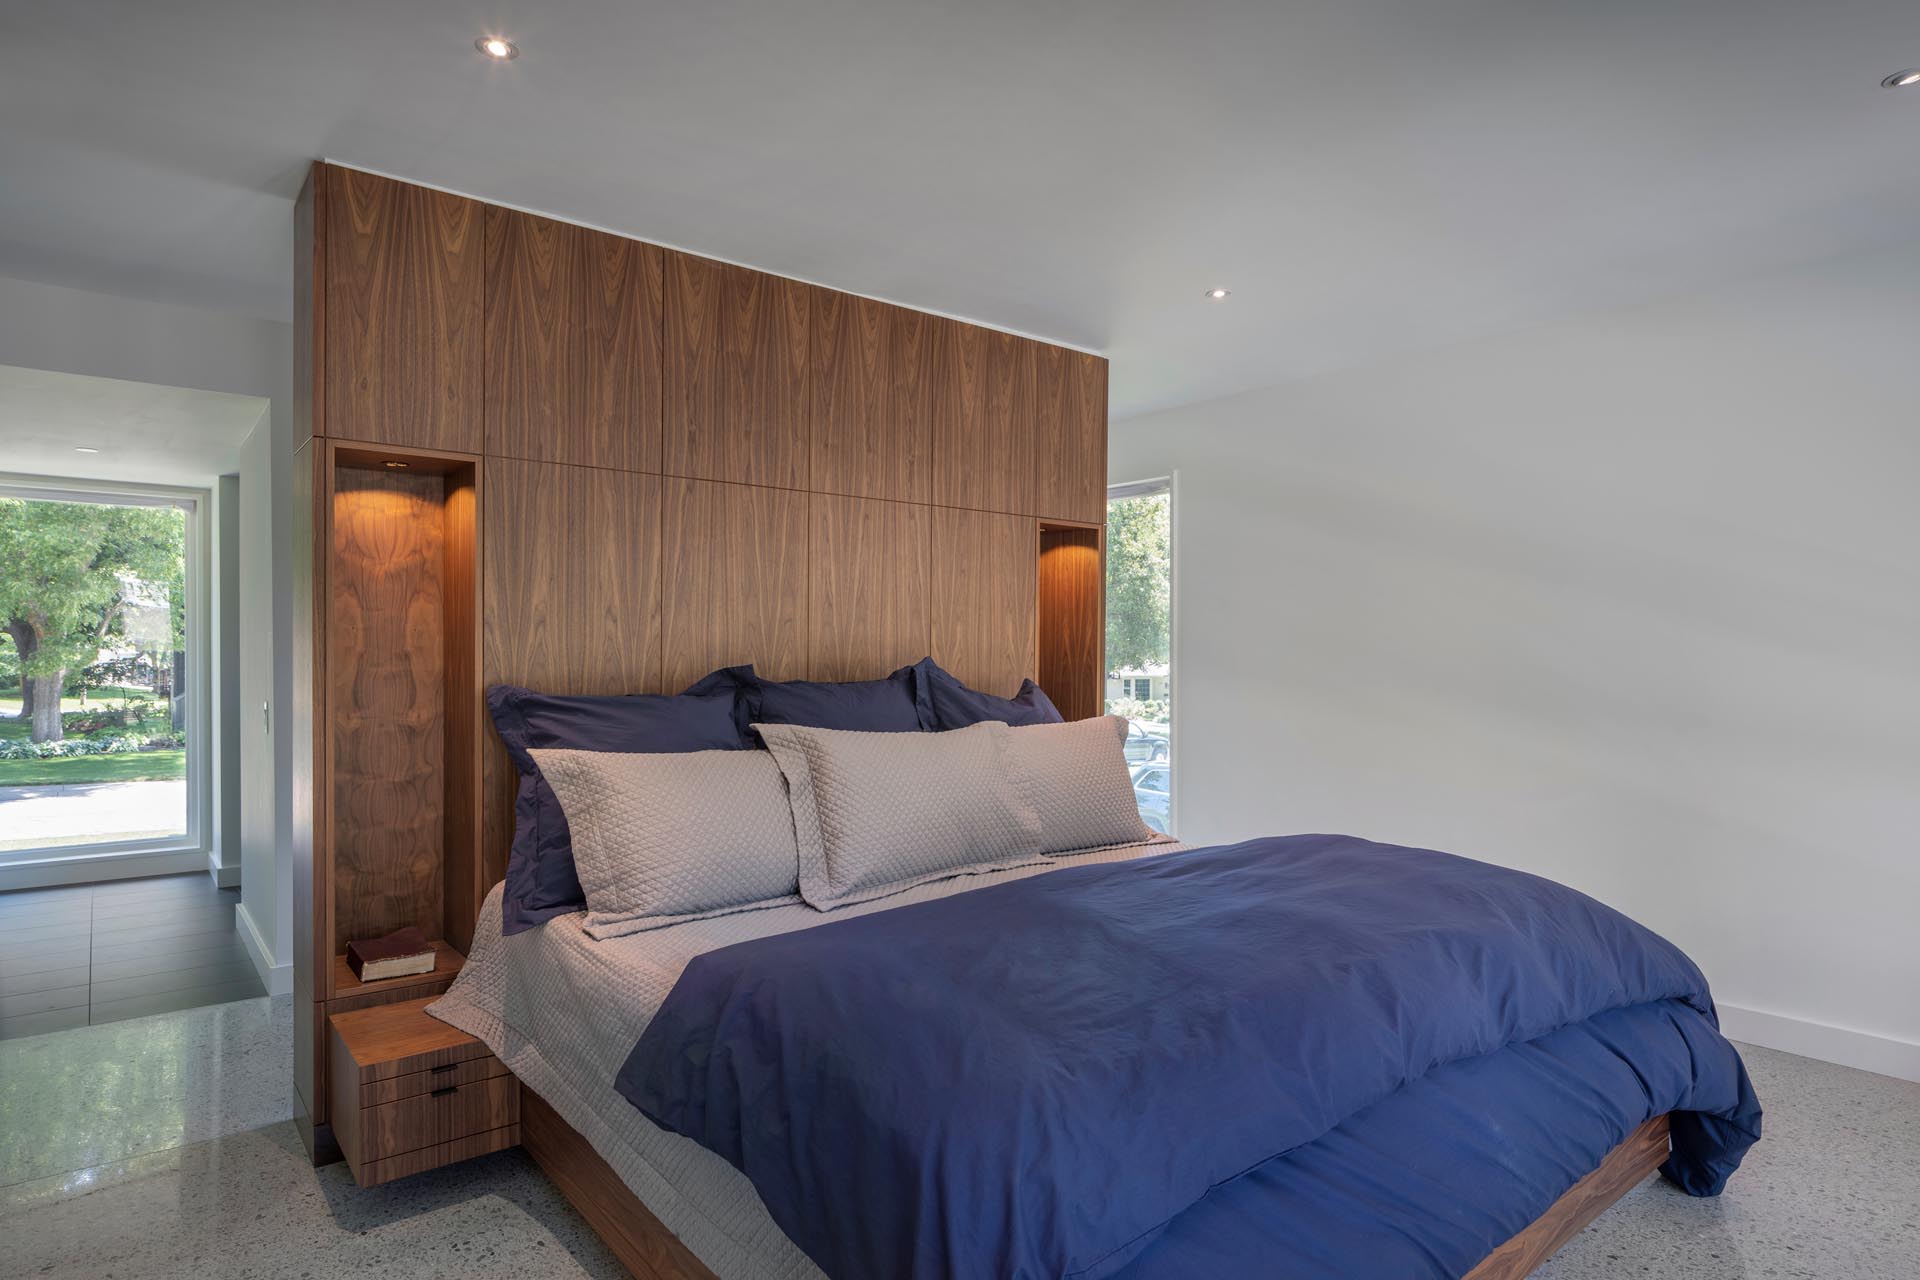 Современная спальня с деревянной акцентной стеной с пустотами, позволяющими установить прикроватные лампы.